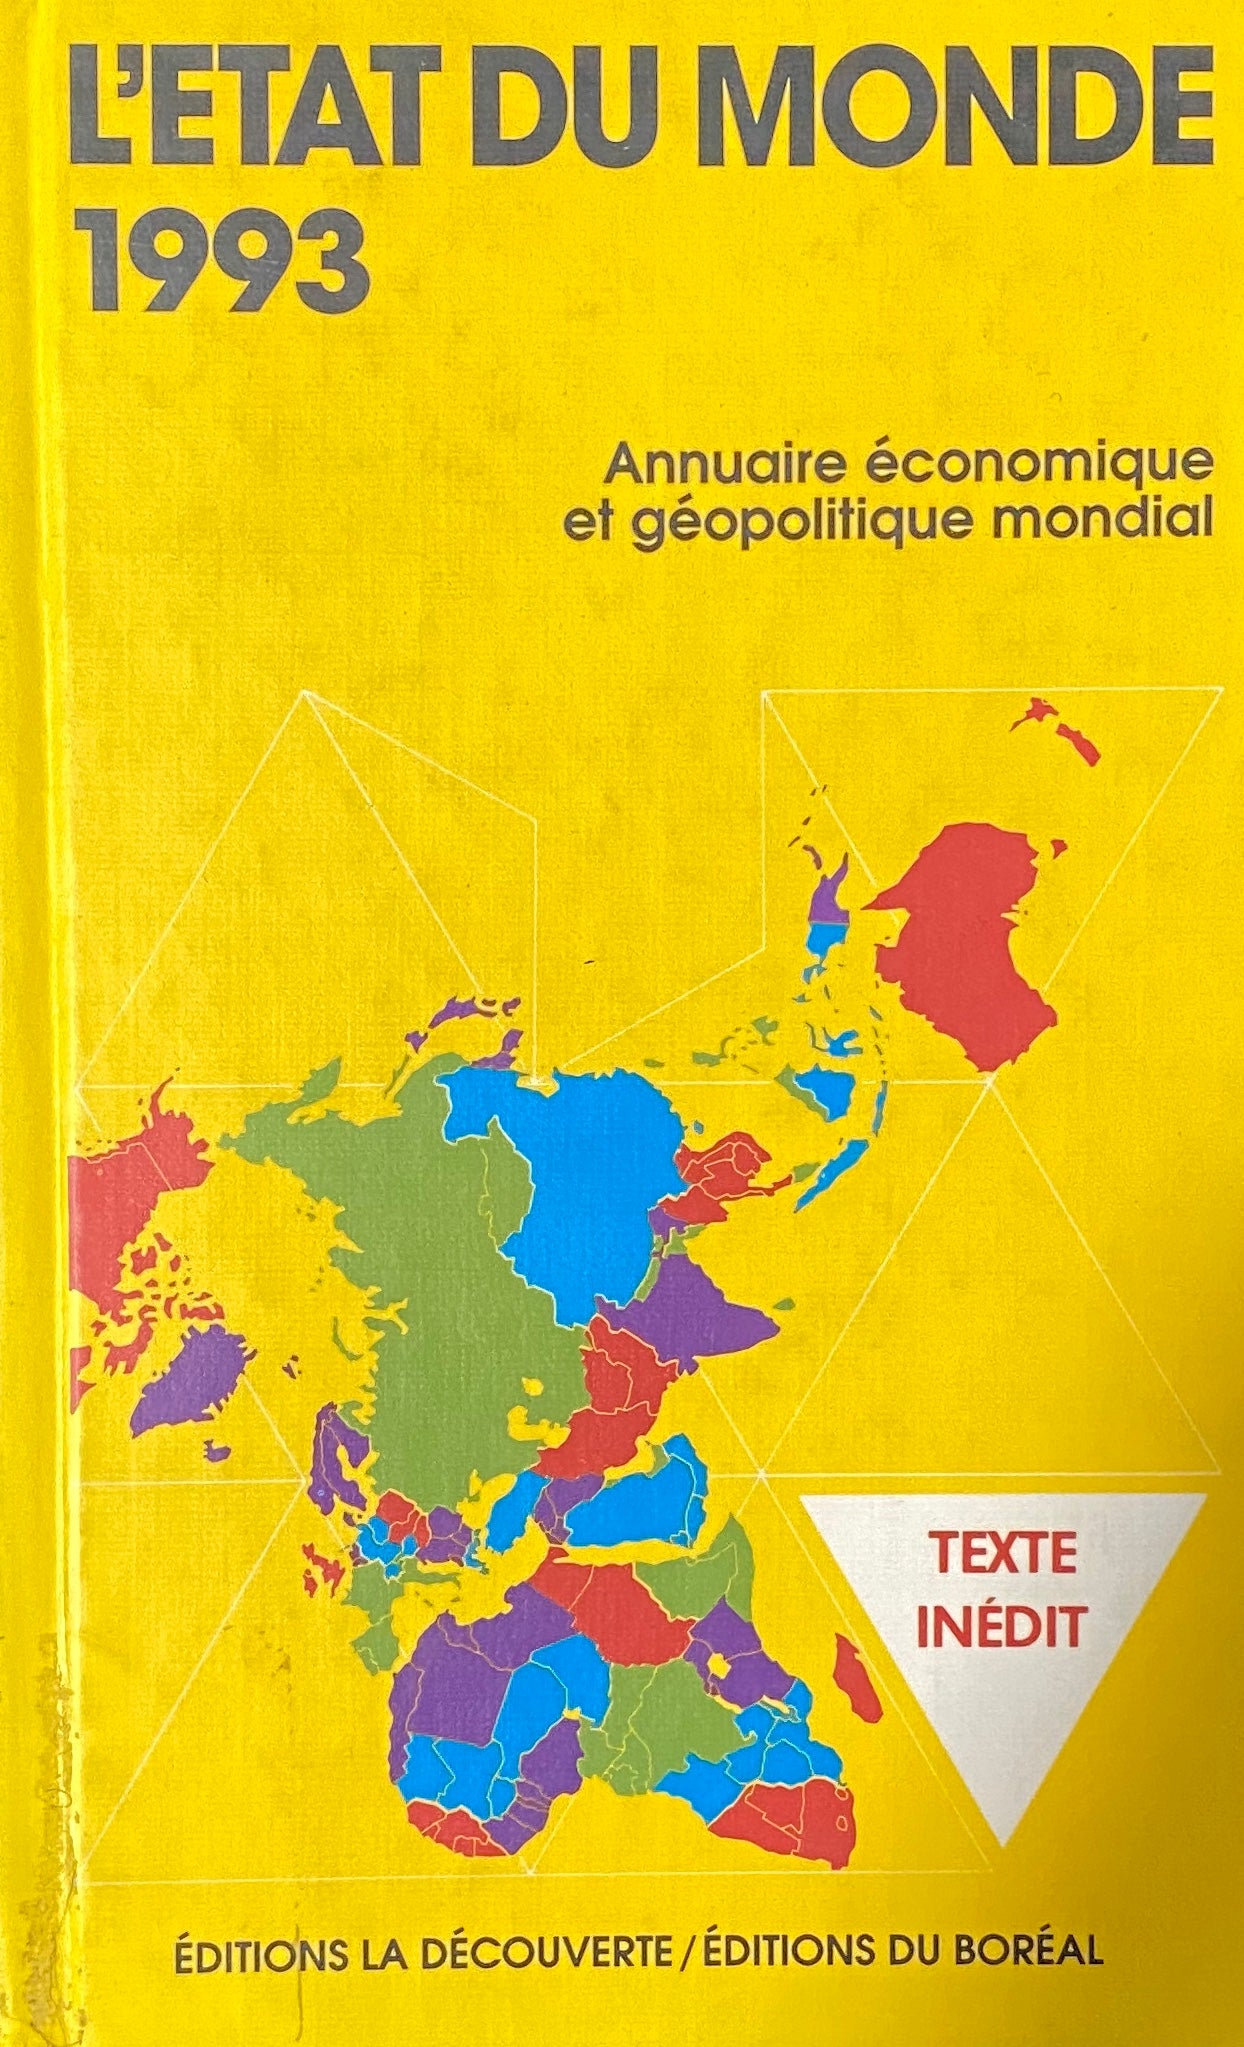 Livre ISBN 2890525155 État du monde 1993 : annuaire économique et géopolitique modial